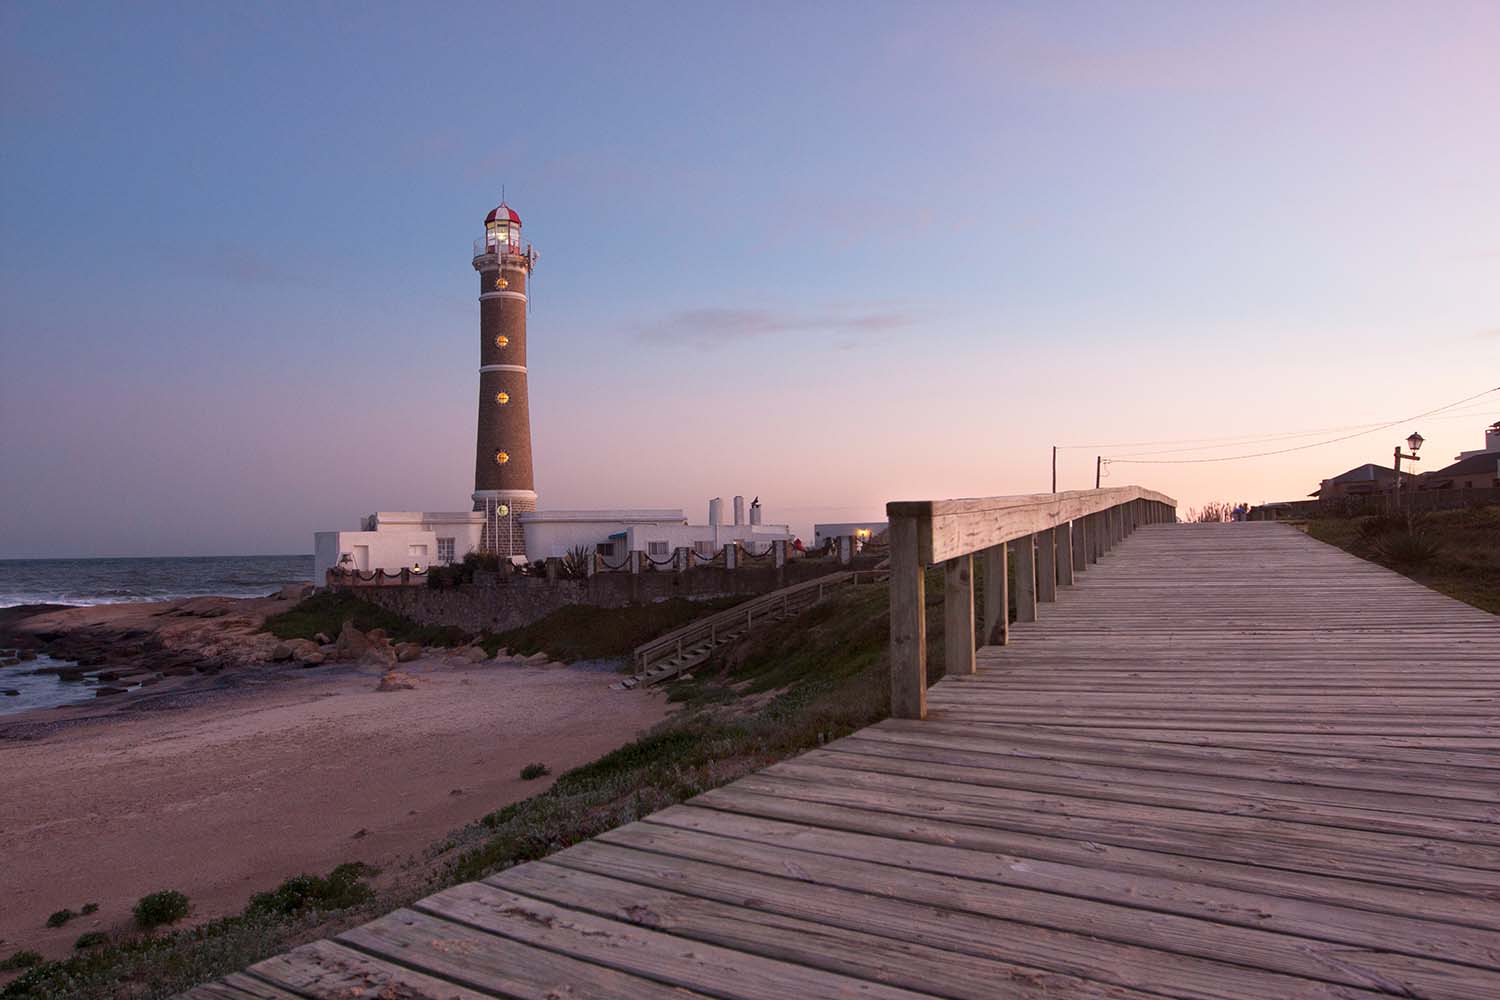 The José Ignacio lighthouse